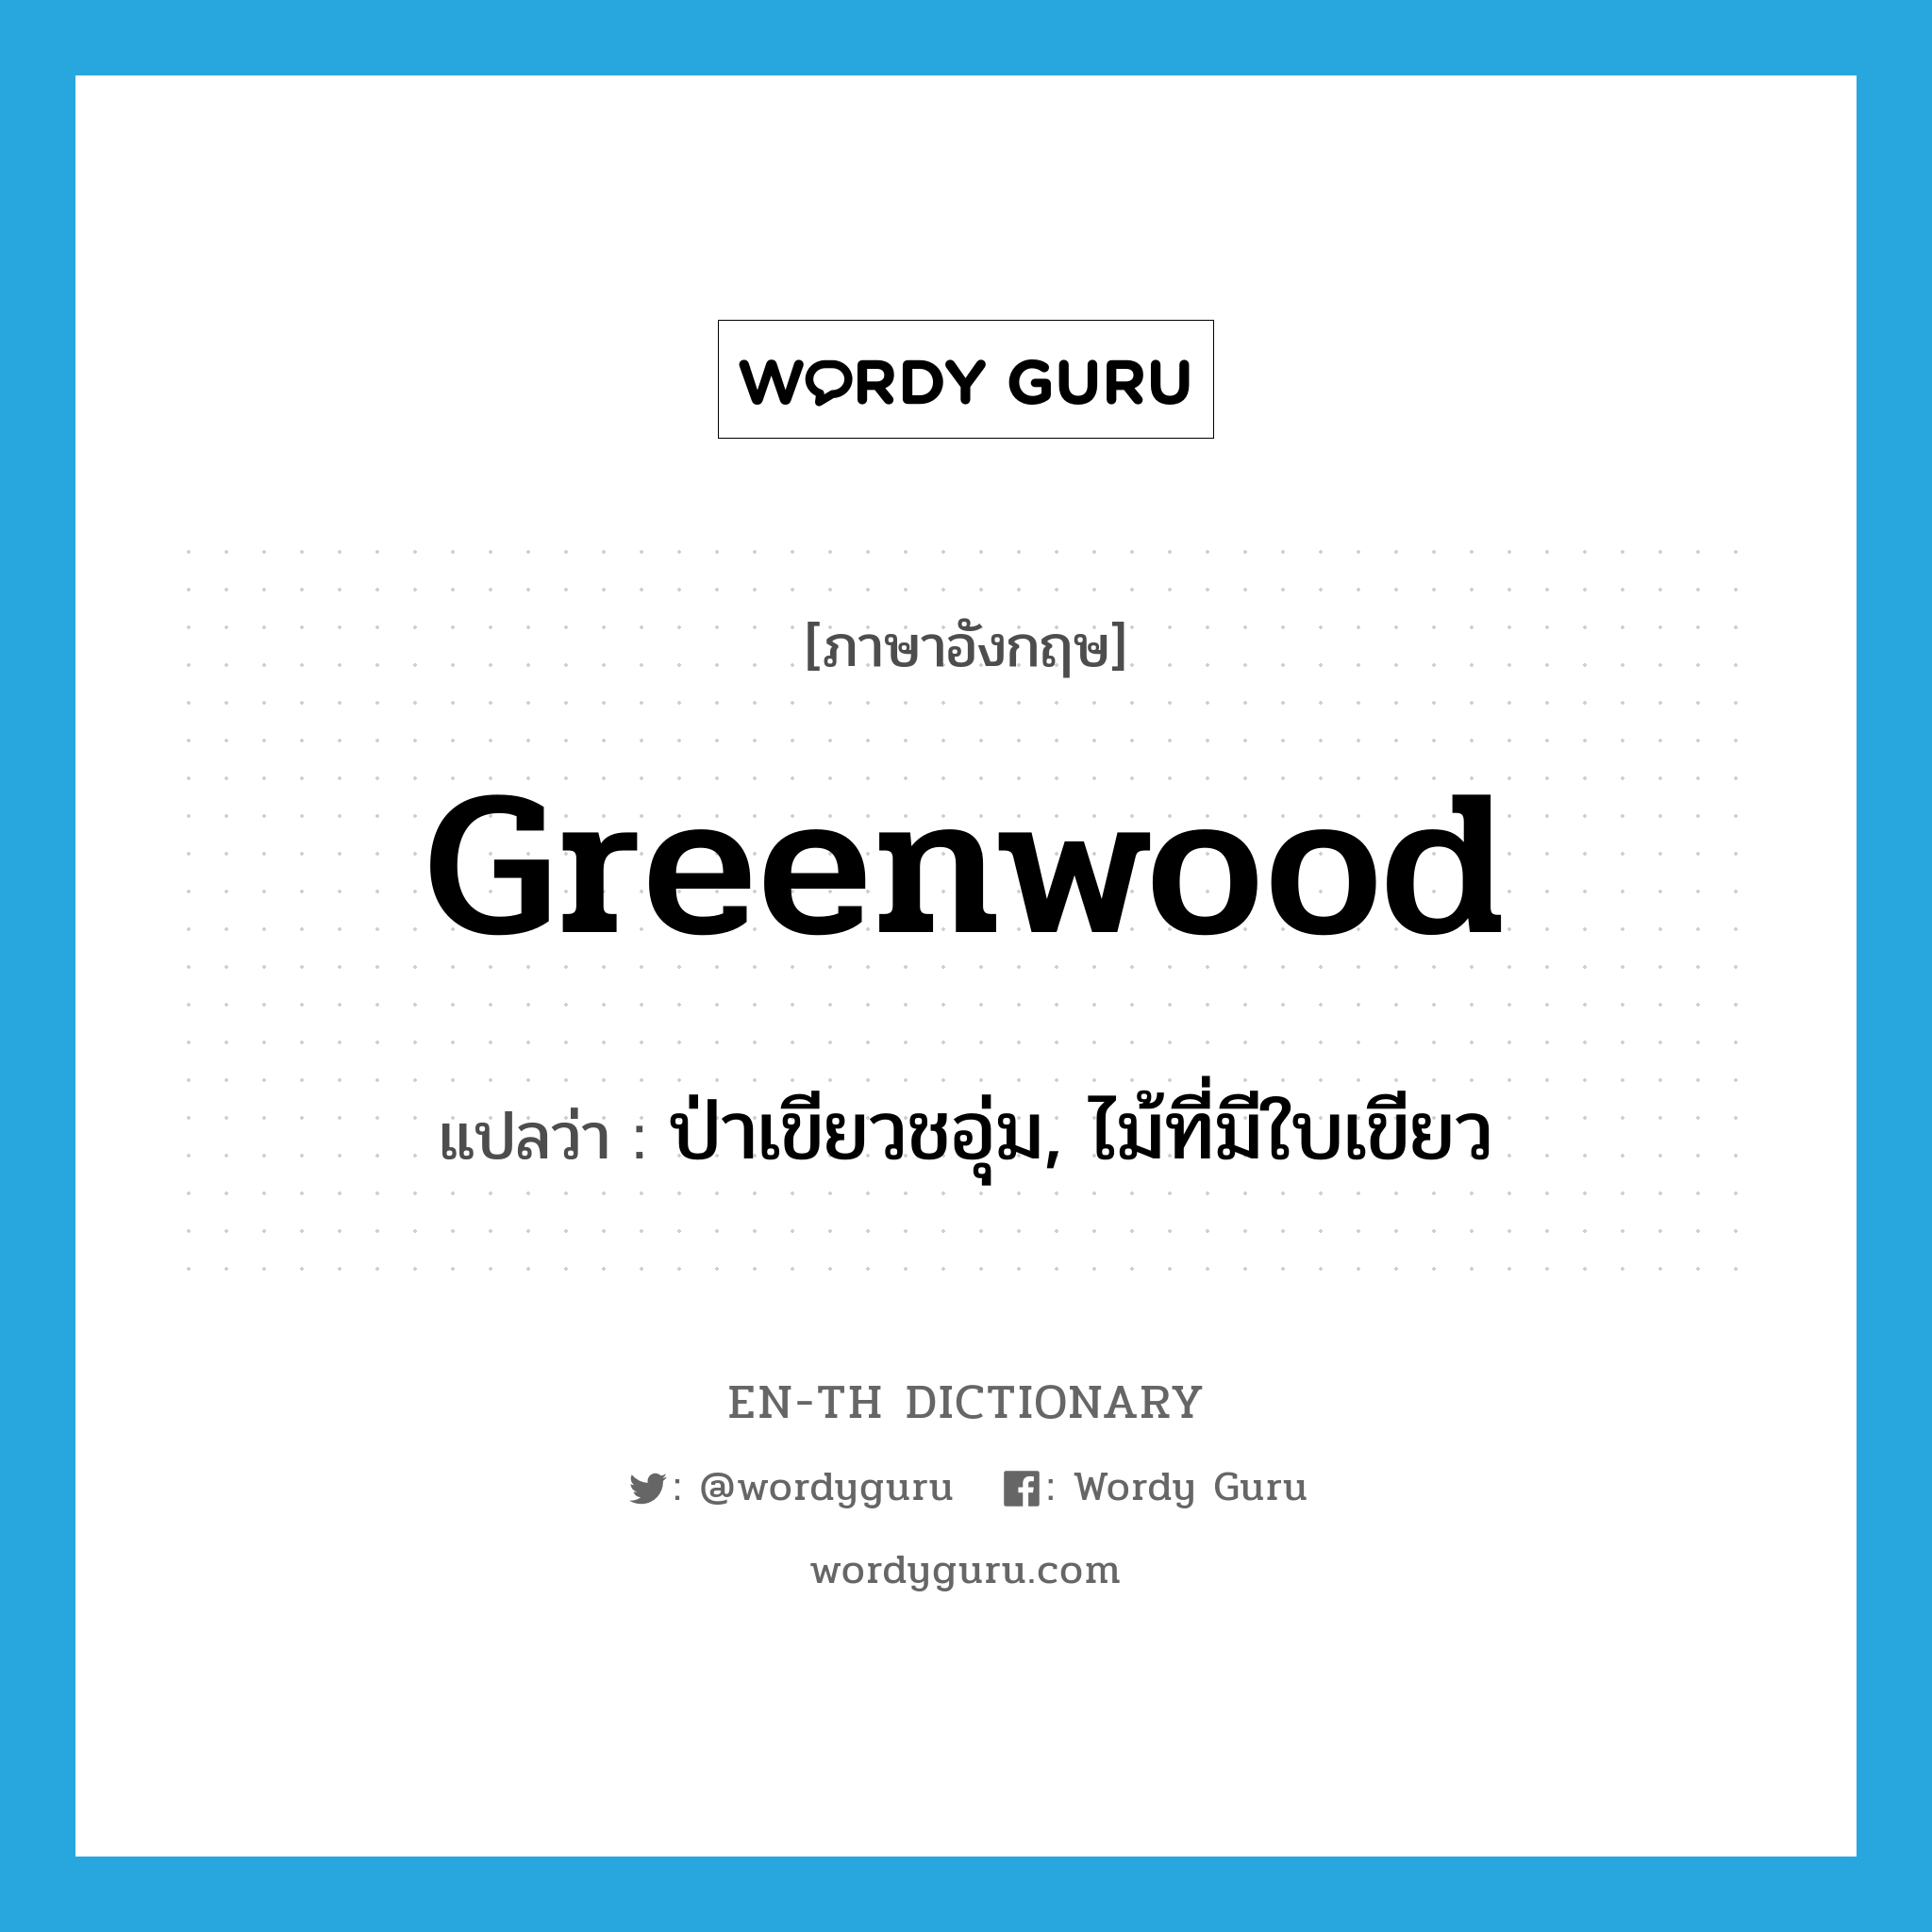 ป่าเขียวชอุ่ม, ไม้ที่มีใบเขียว ภาษาอังกฤษ?, คำศัพท์ภาษาอังกฤษ ป่าเขียวชอุ่ม, ไม้ที่มีใบเขียว แปลว่า greenwood ประเภท N หมวด N